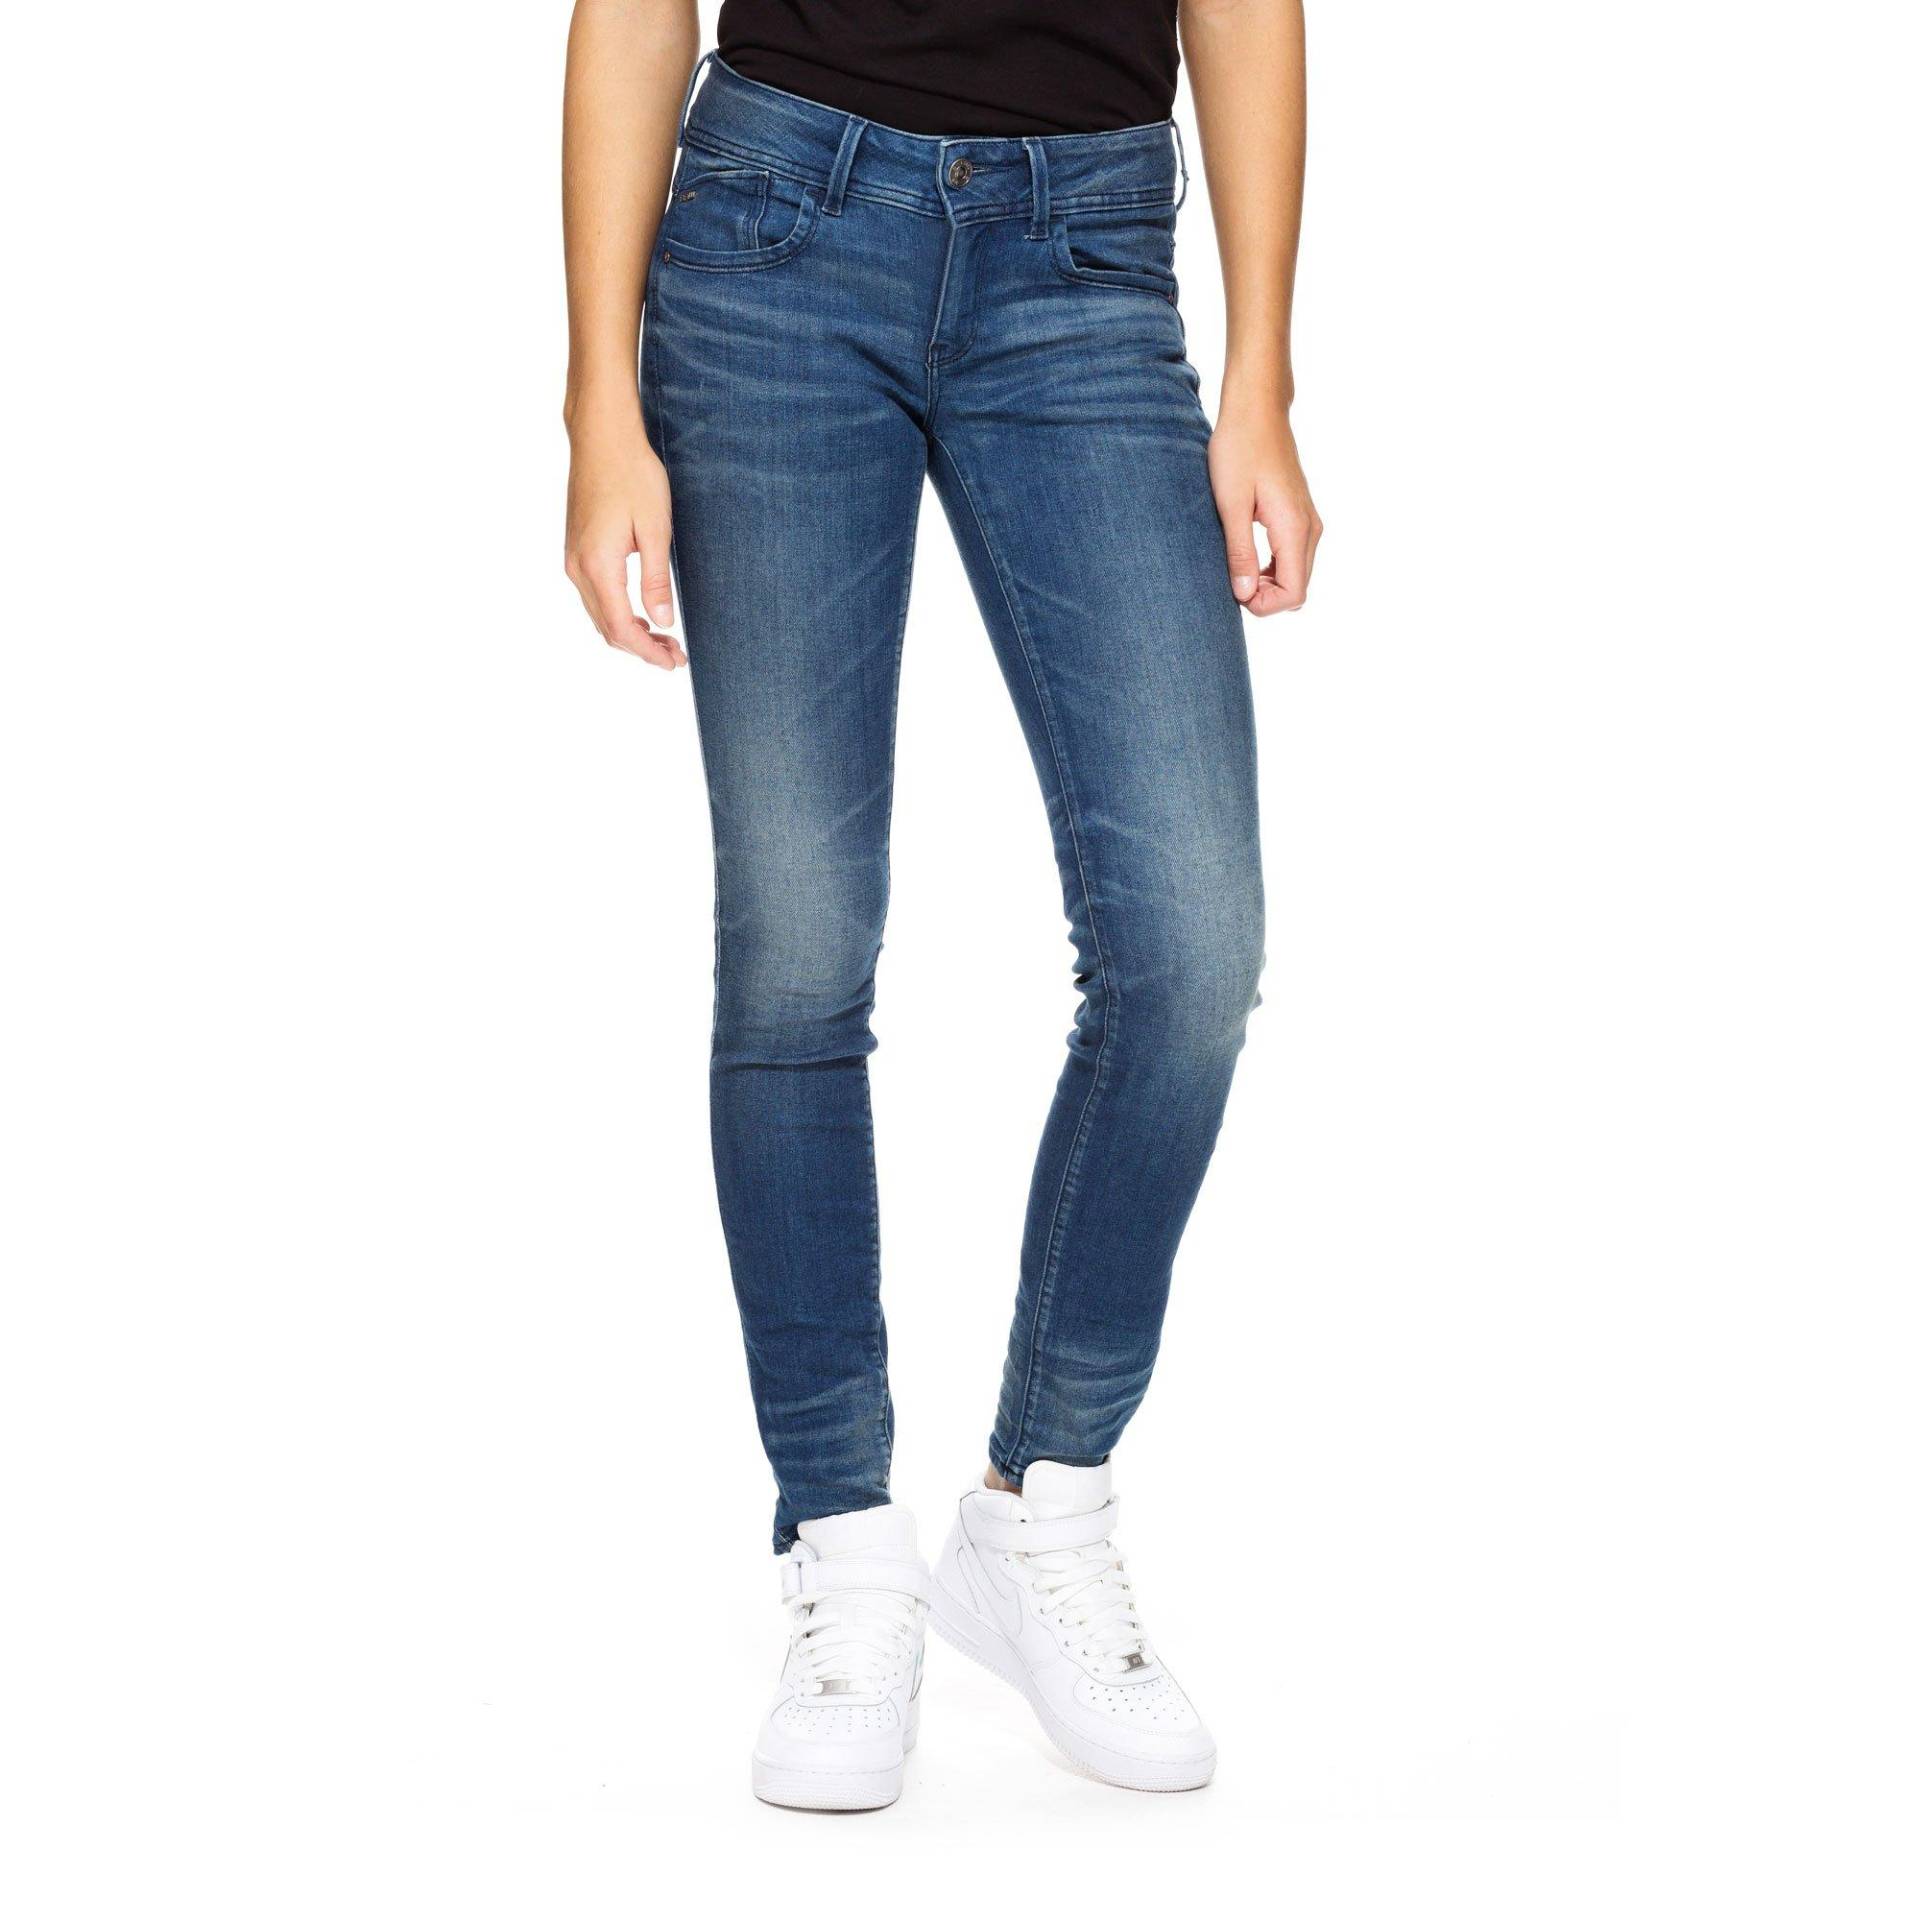 Jeans, Skinny Fit Damen Blau Denim L32/W25 von G-STAR